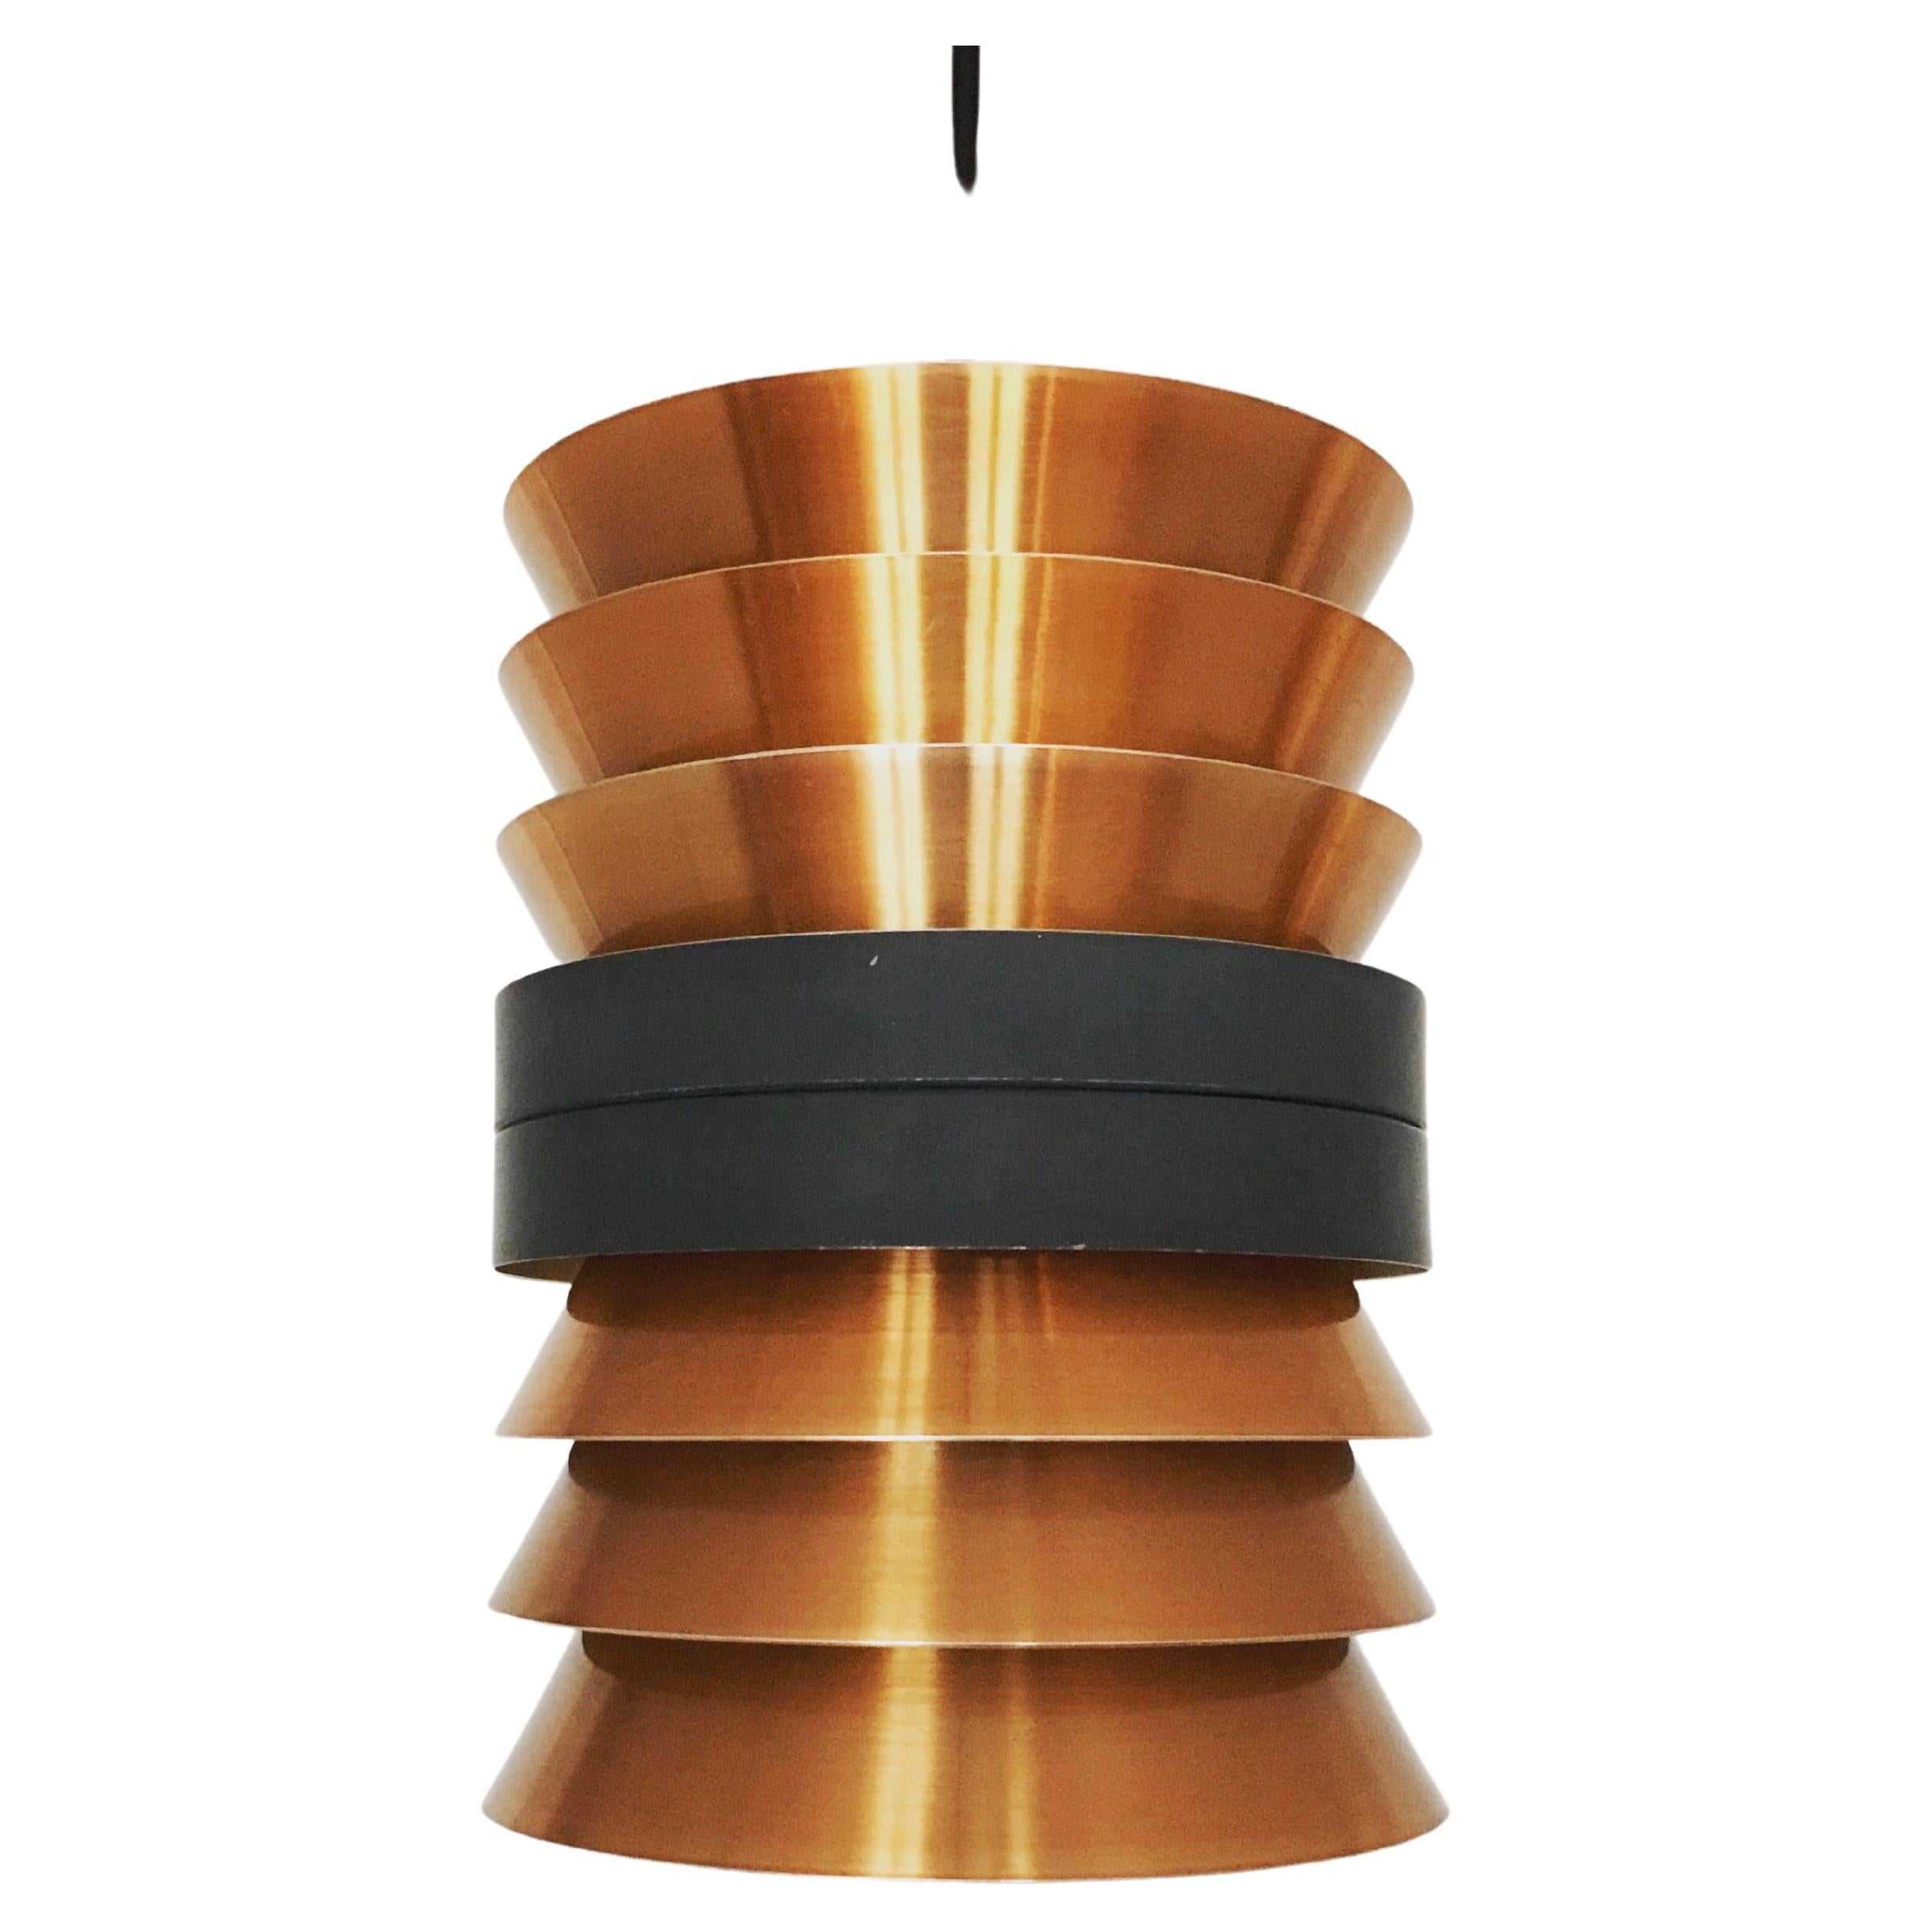 Copper pendant lamp by Doria